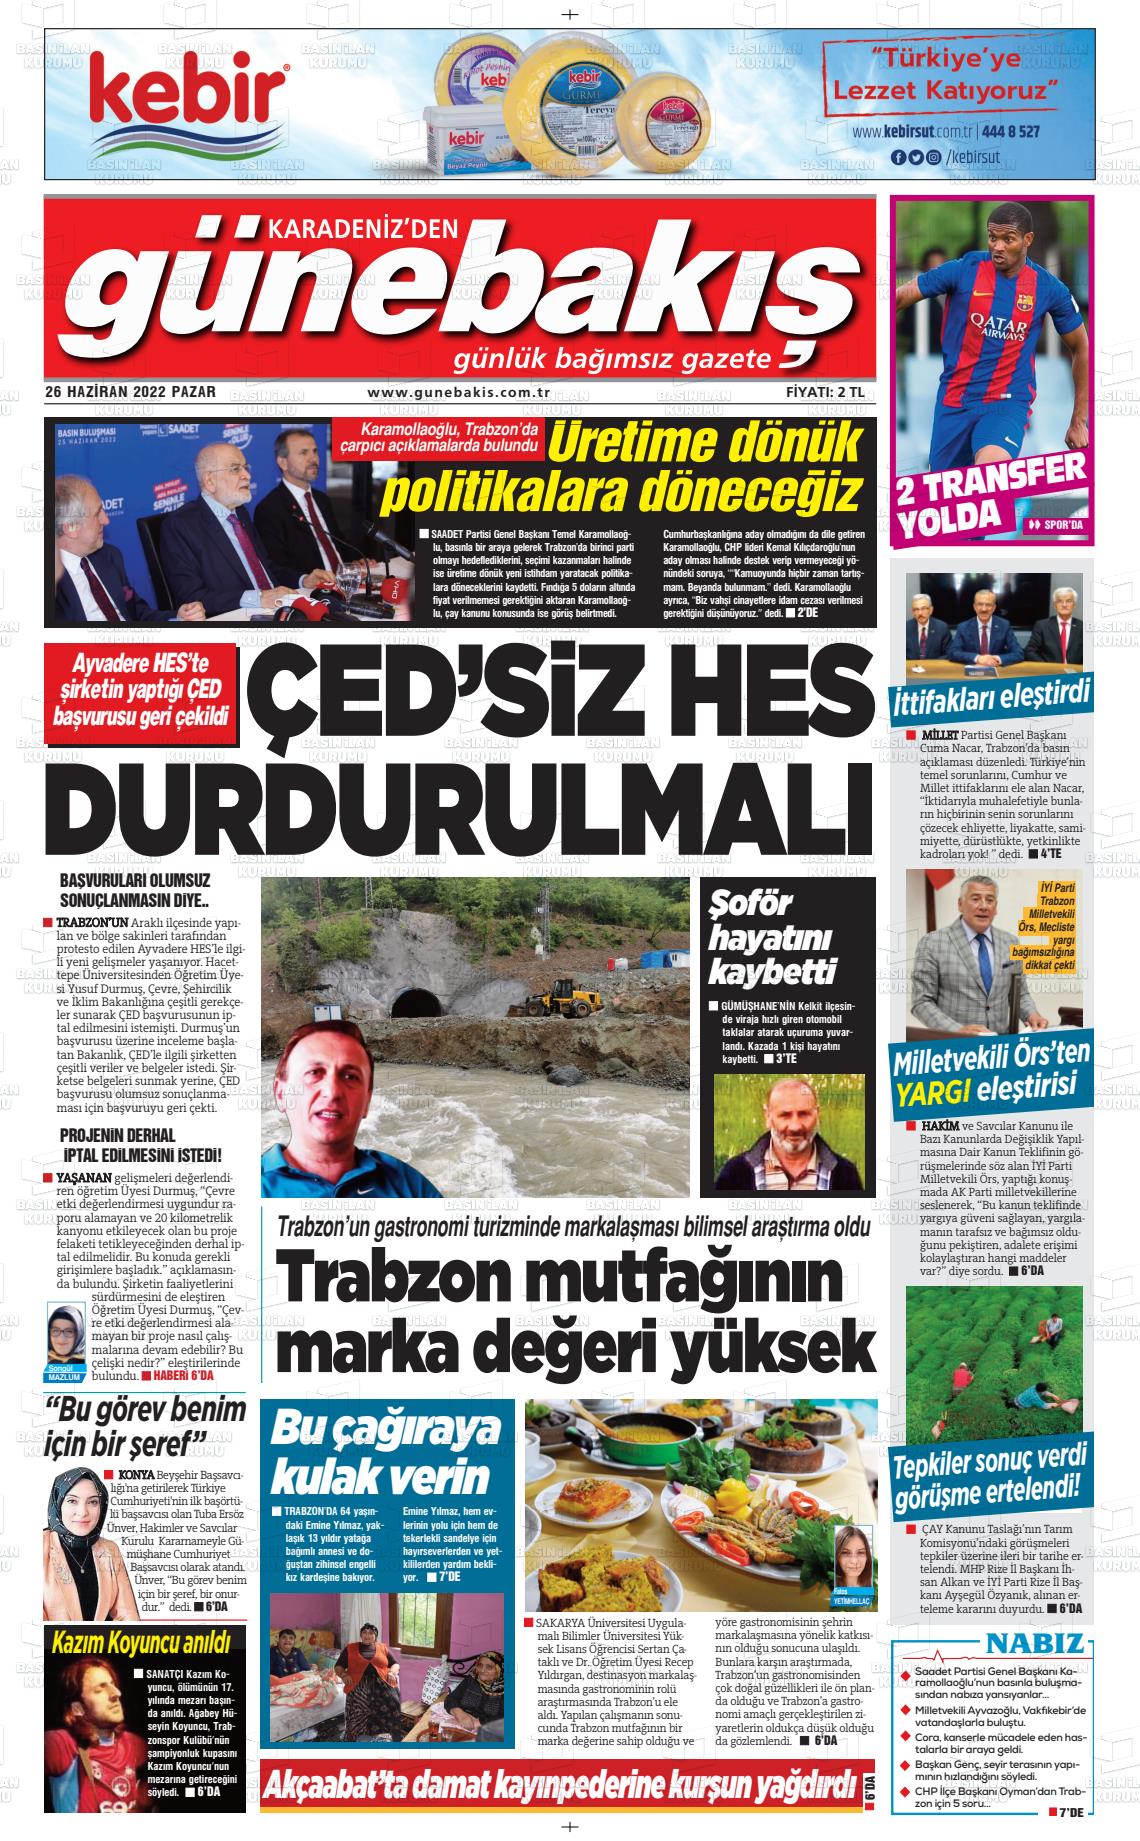 26 Haziran 2022 Günebakış Gazete Manşeti